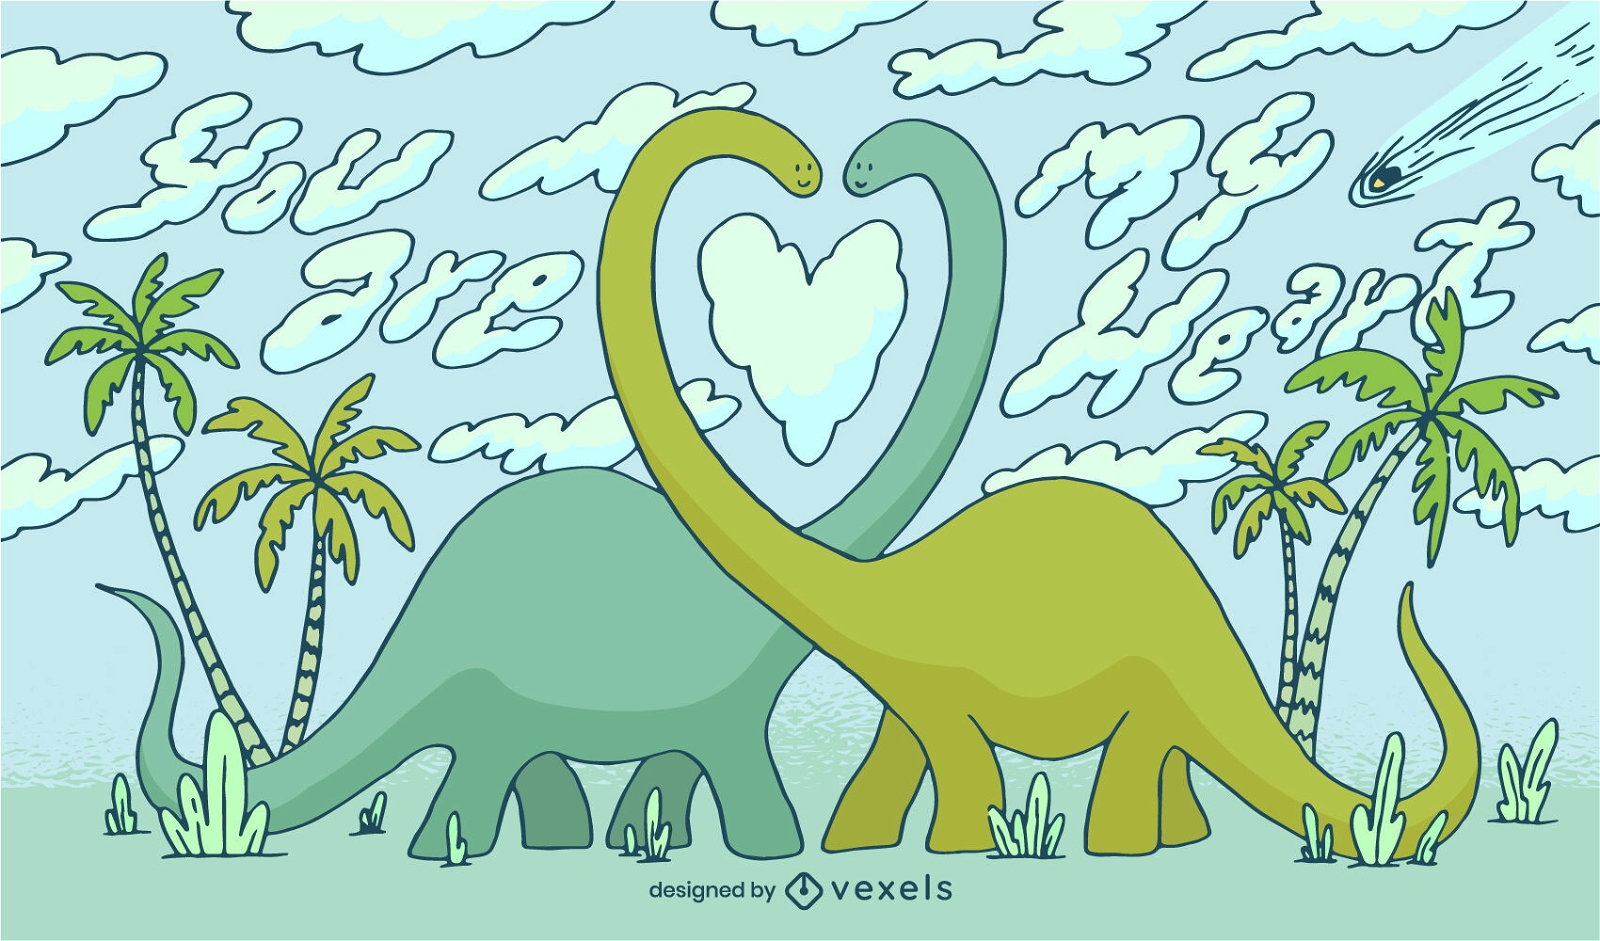 Dinossauros apaixonados ilustra??o do dia dos namorados